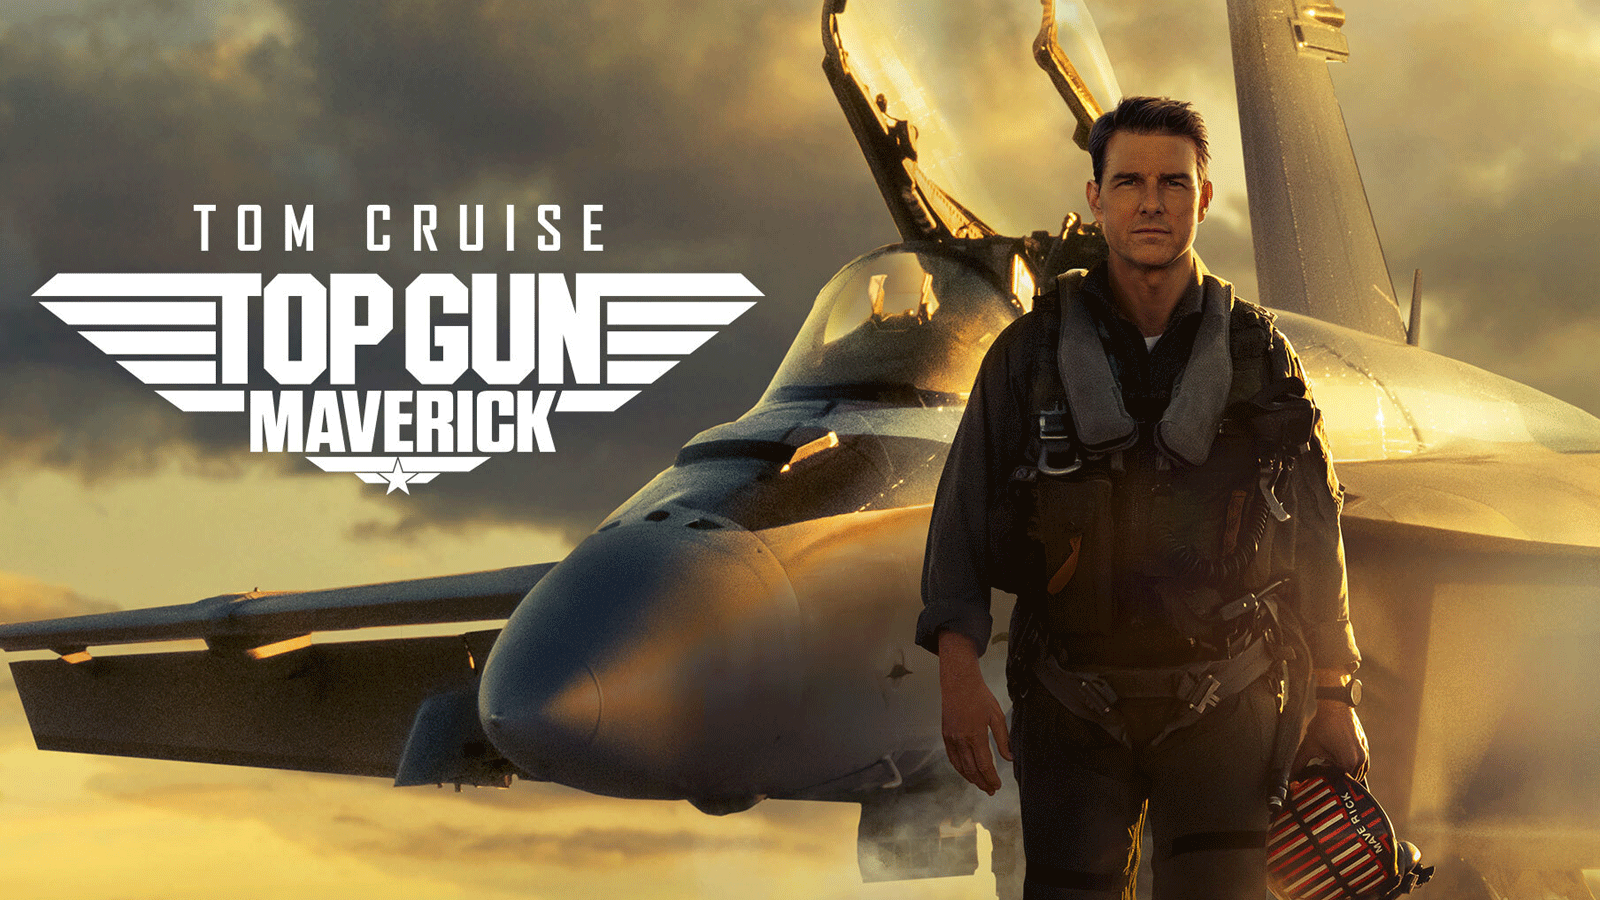 فیلم Top Gun: Maverick، یکی از بهترین فیلم های اکشن 2022 اکران شده